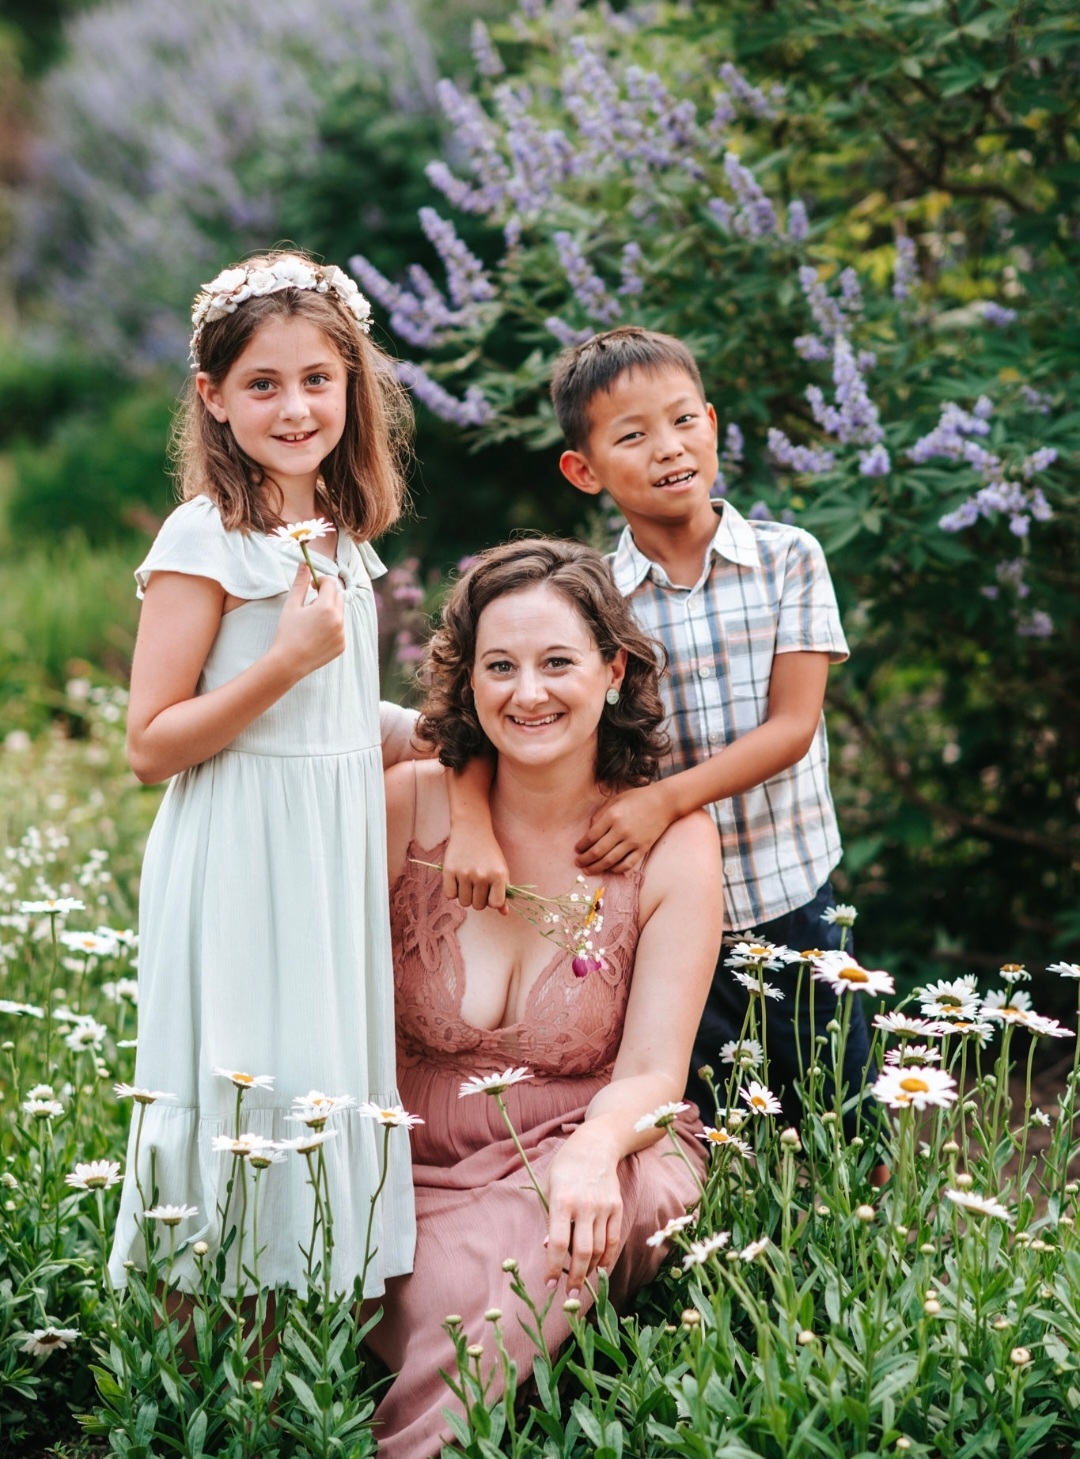 kathleen with her children